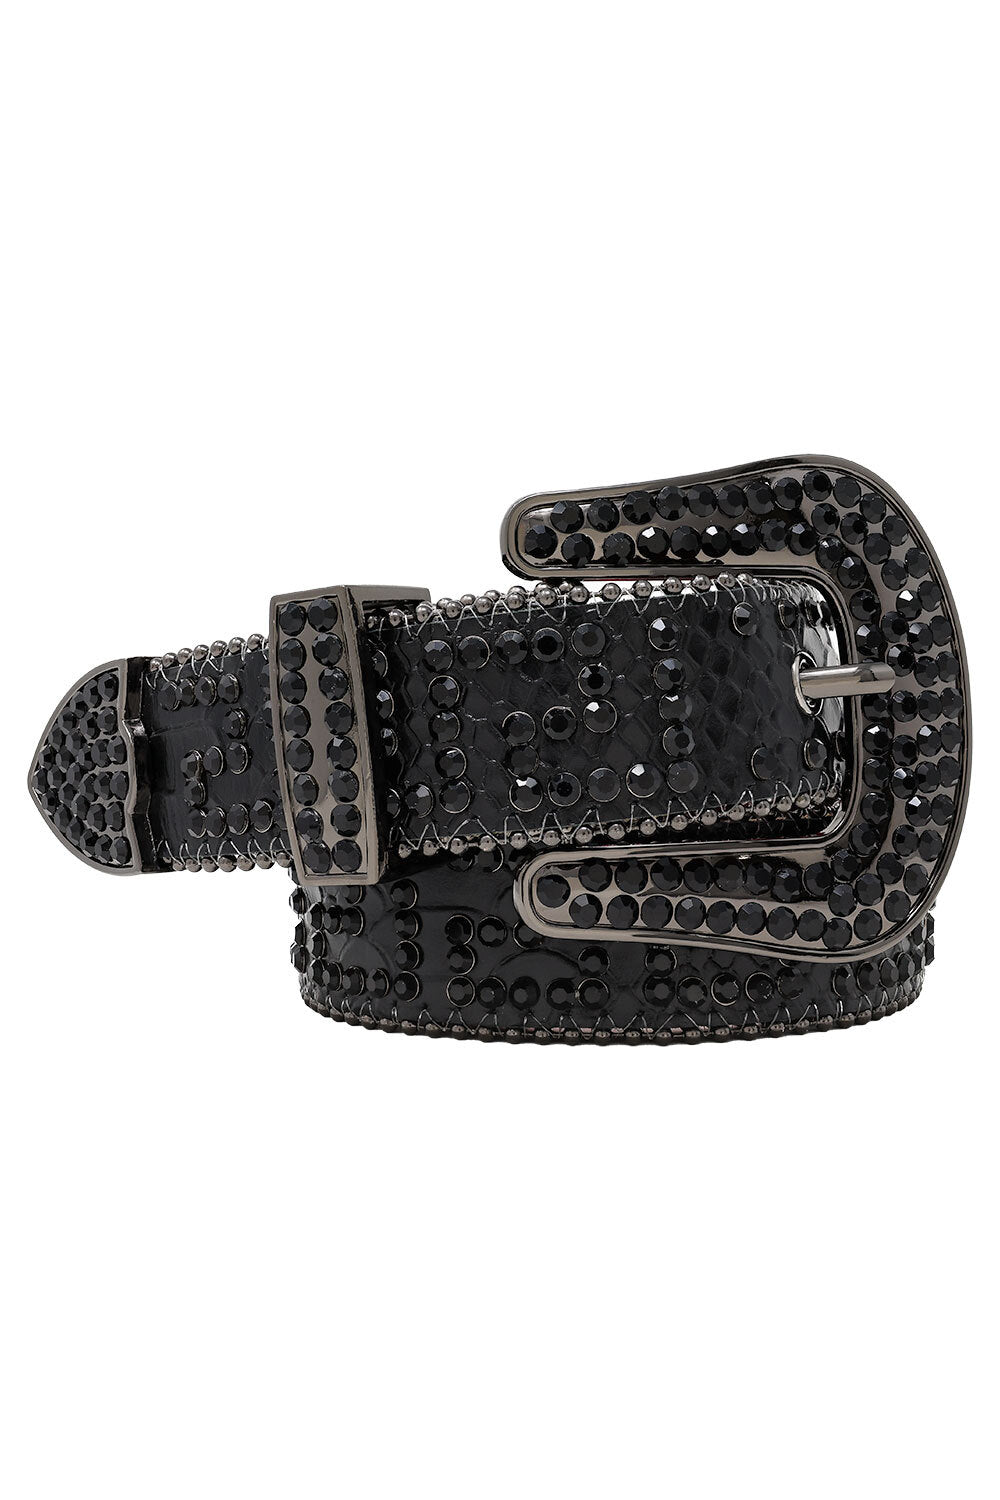 Barabas Men's Greek Key Pattern Rhinestone Leather Belt BK818